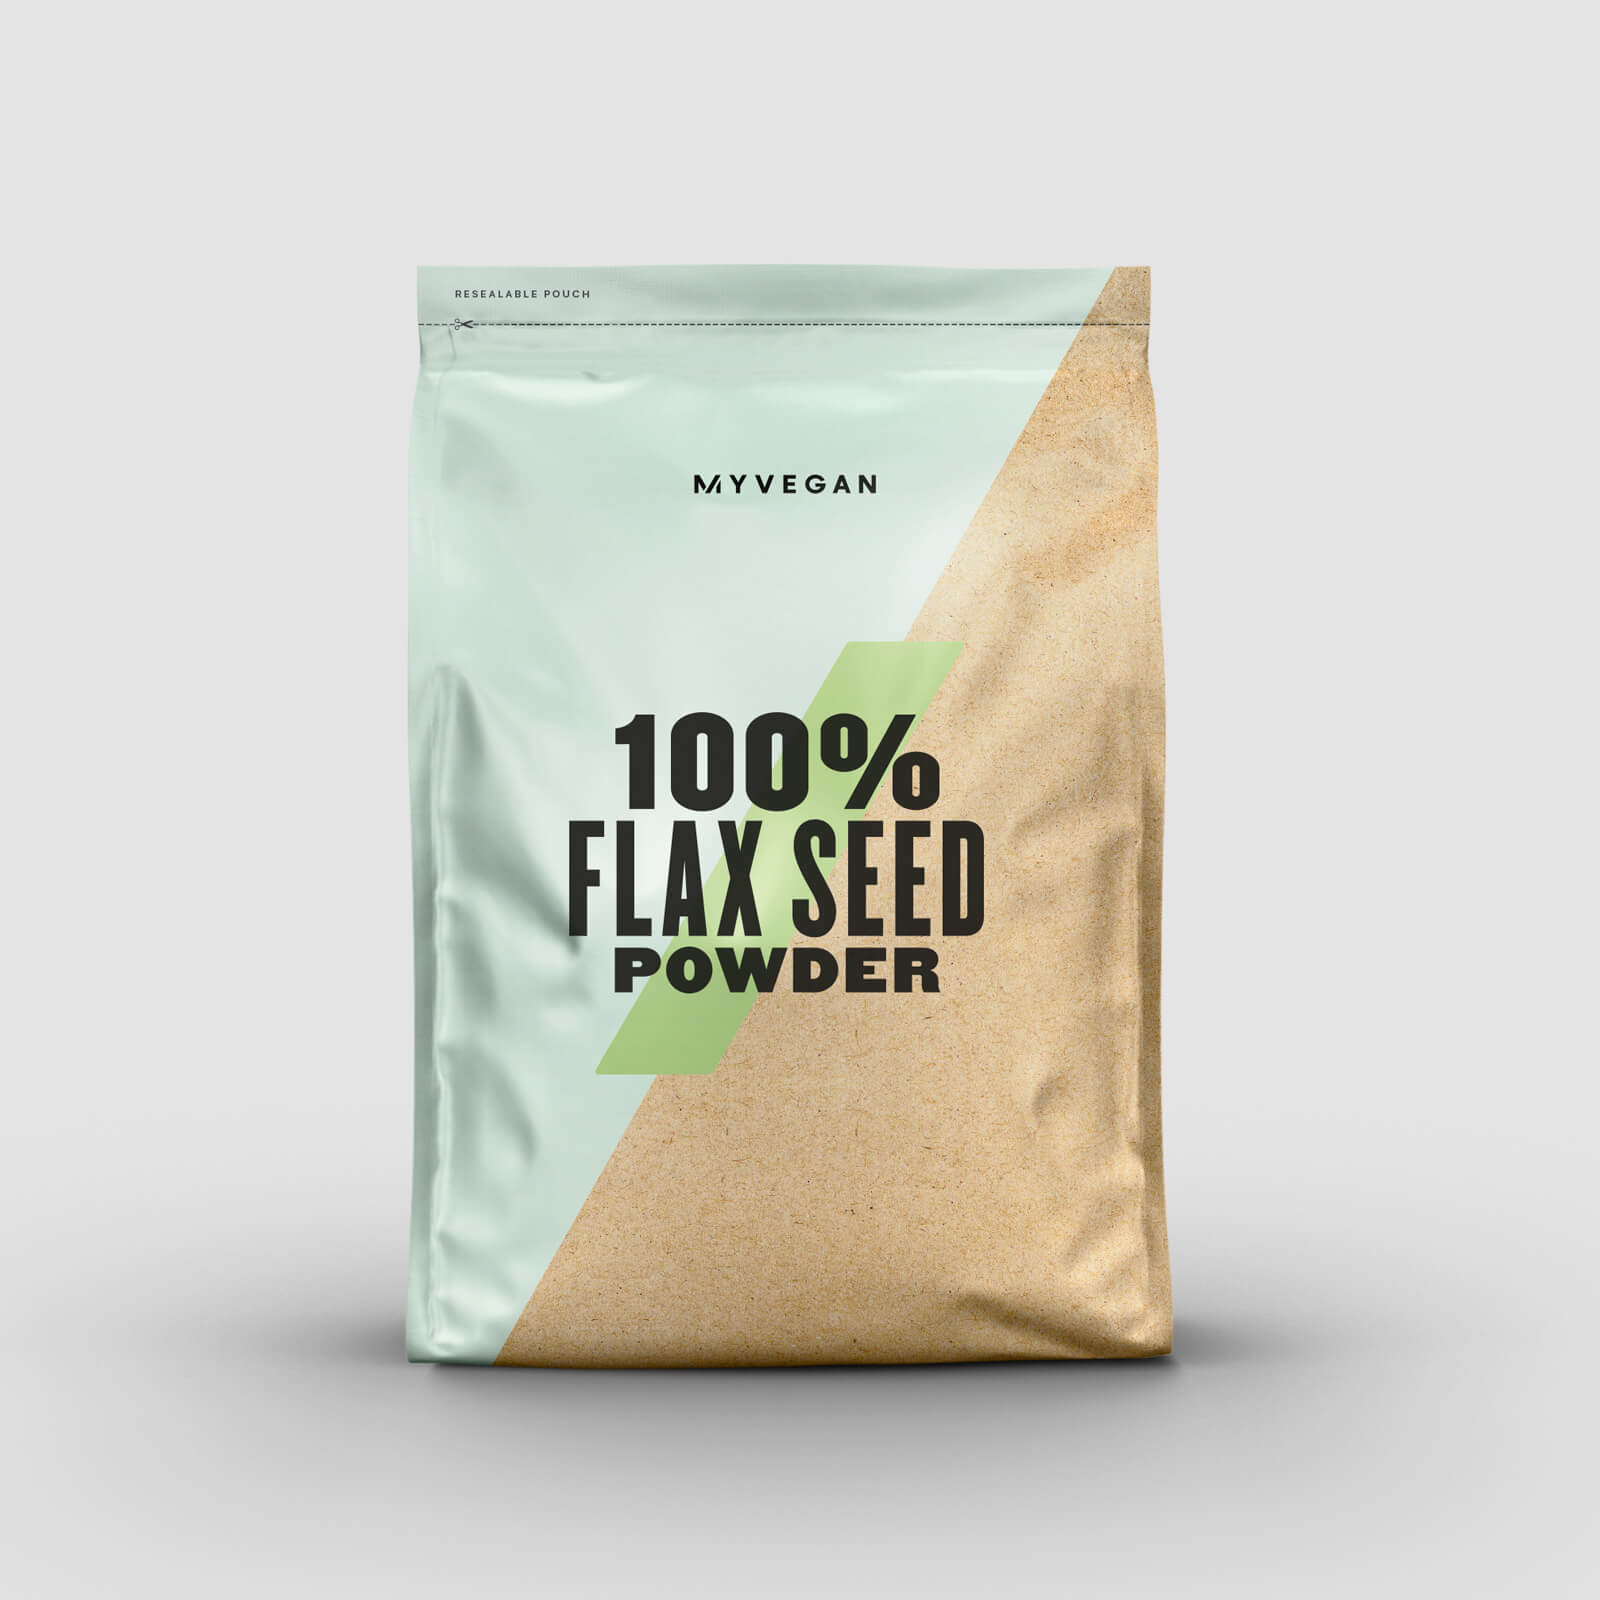 Myvegan 100% Flax Seed Powder - 1kg